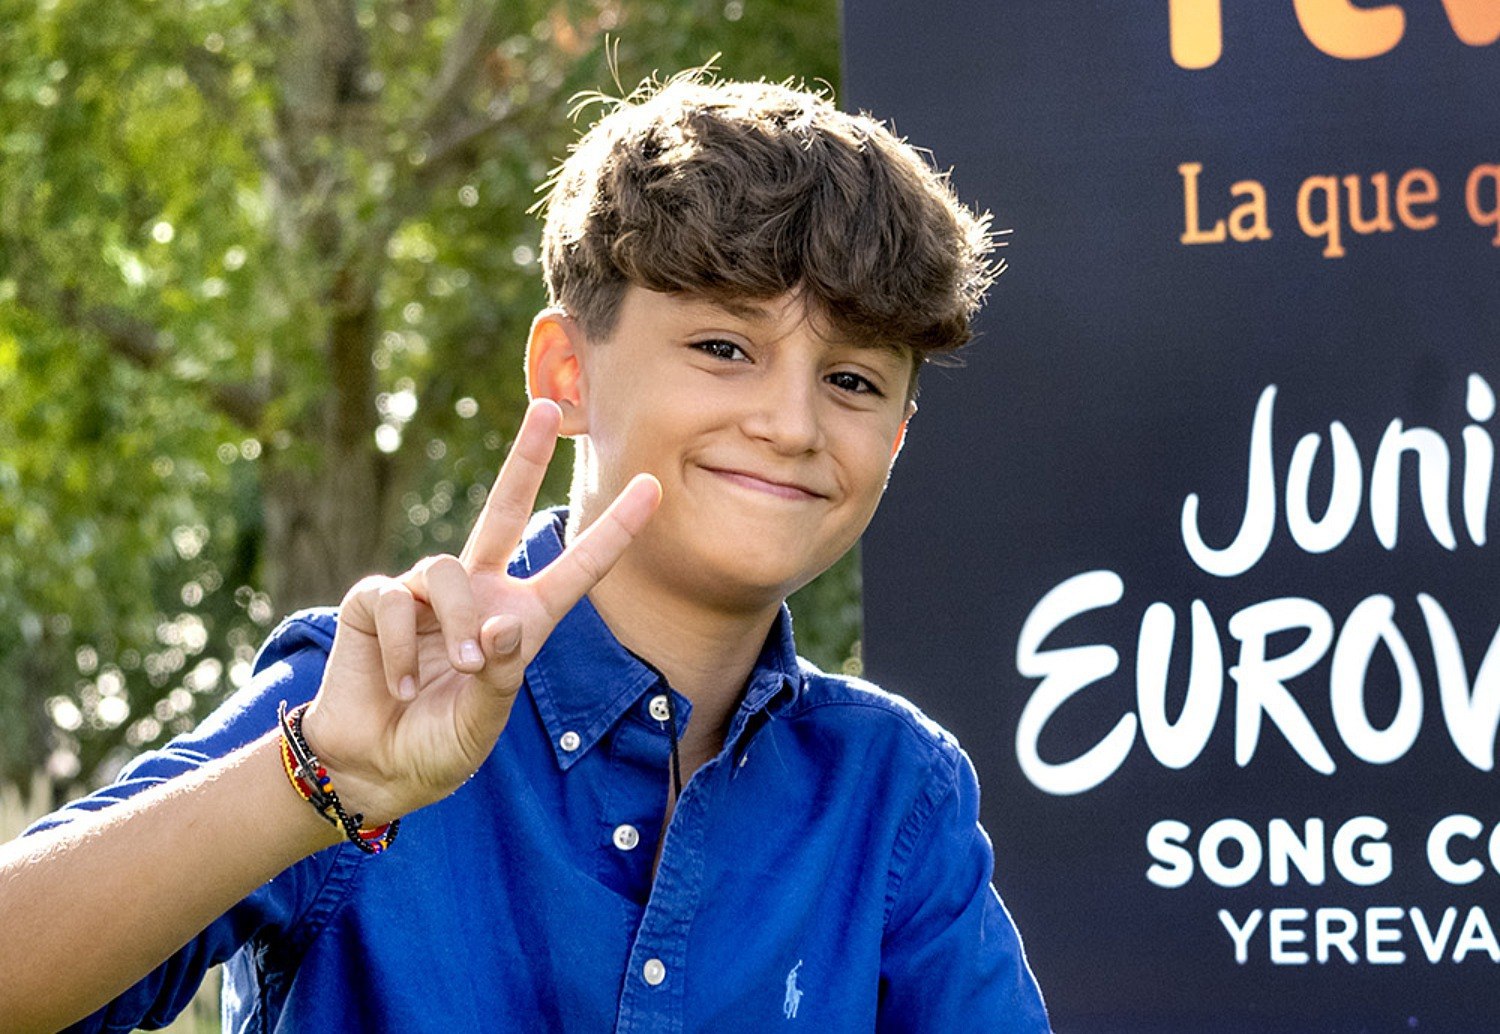 El valenciano Carlos Higes, representante español en Eurovisión Junior 2022